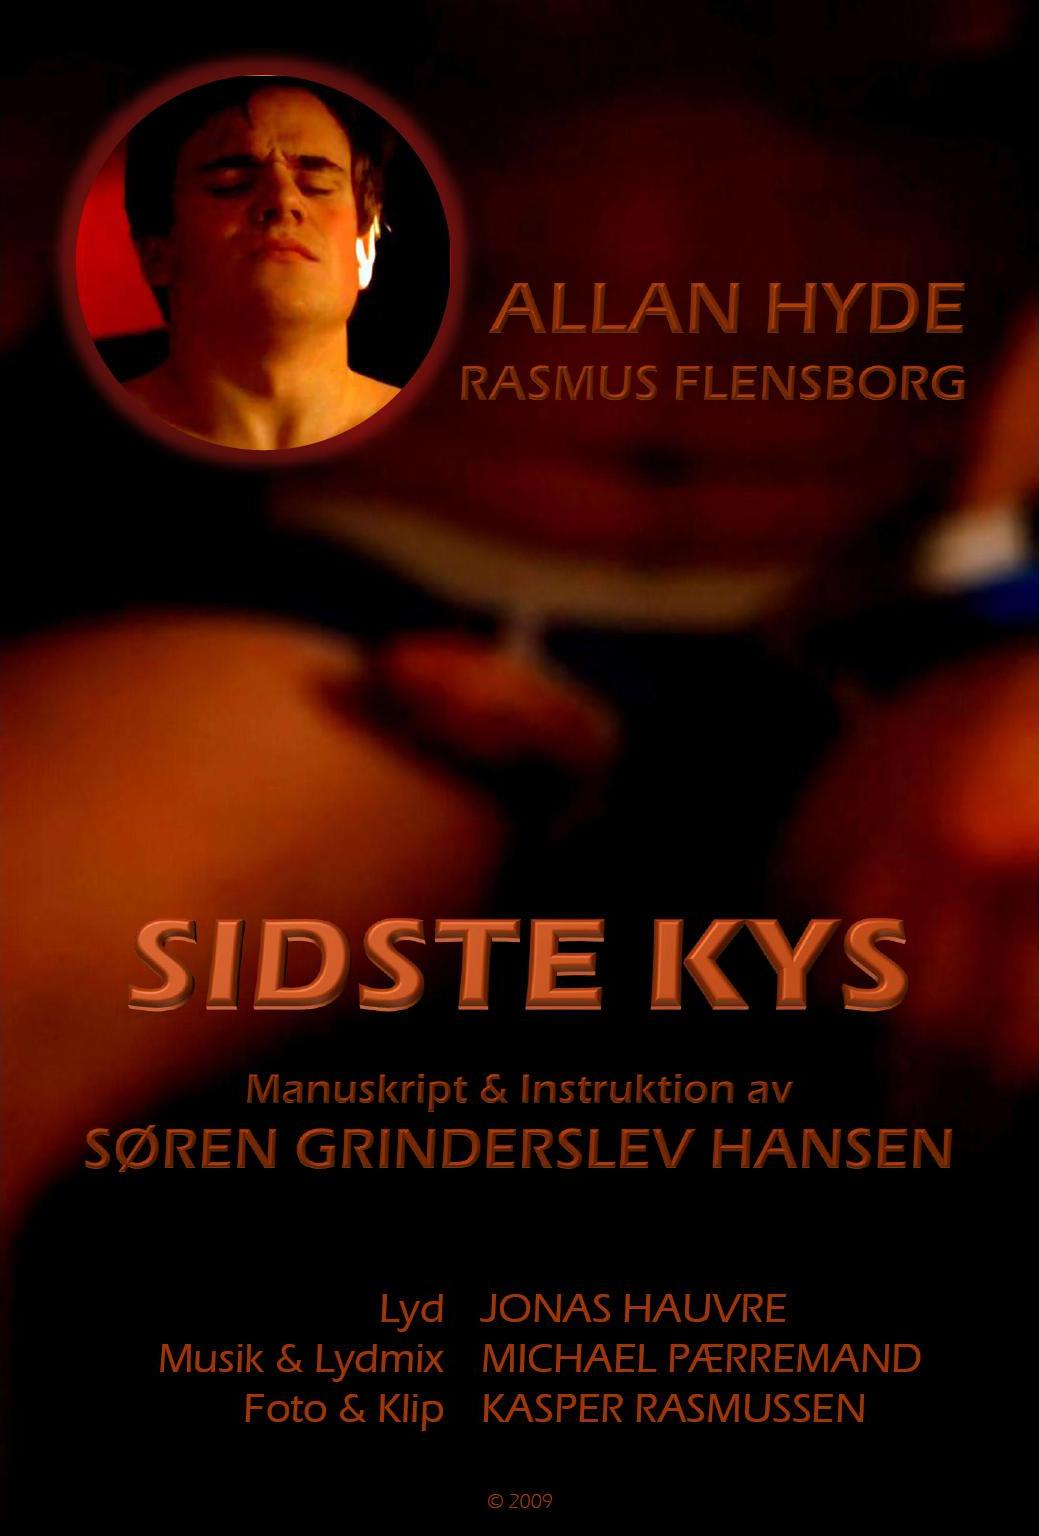 Sidste Kys (2009) Last Kiss